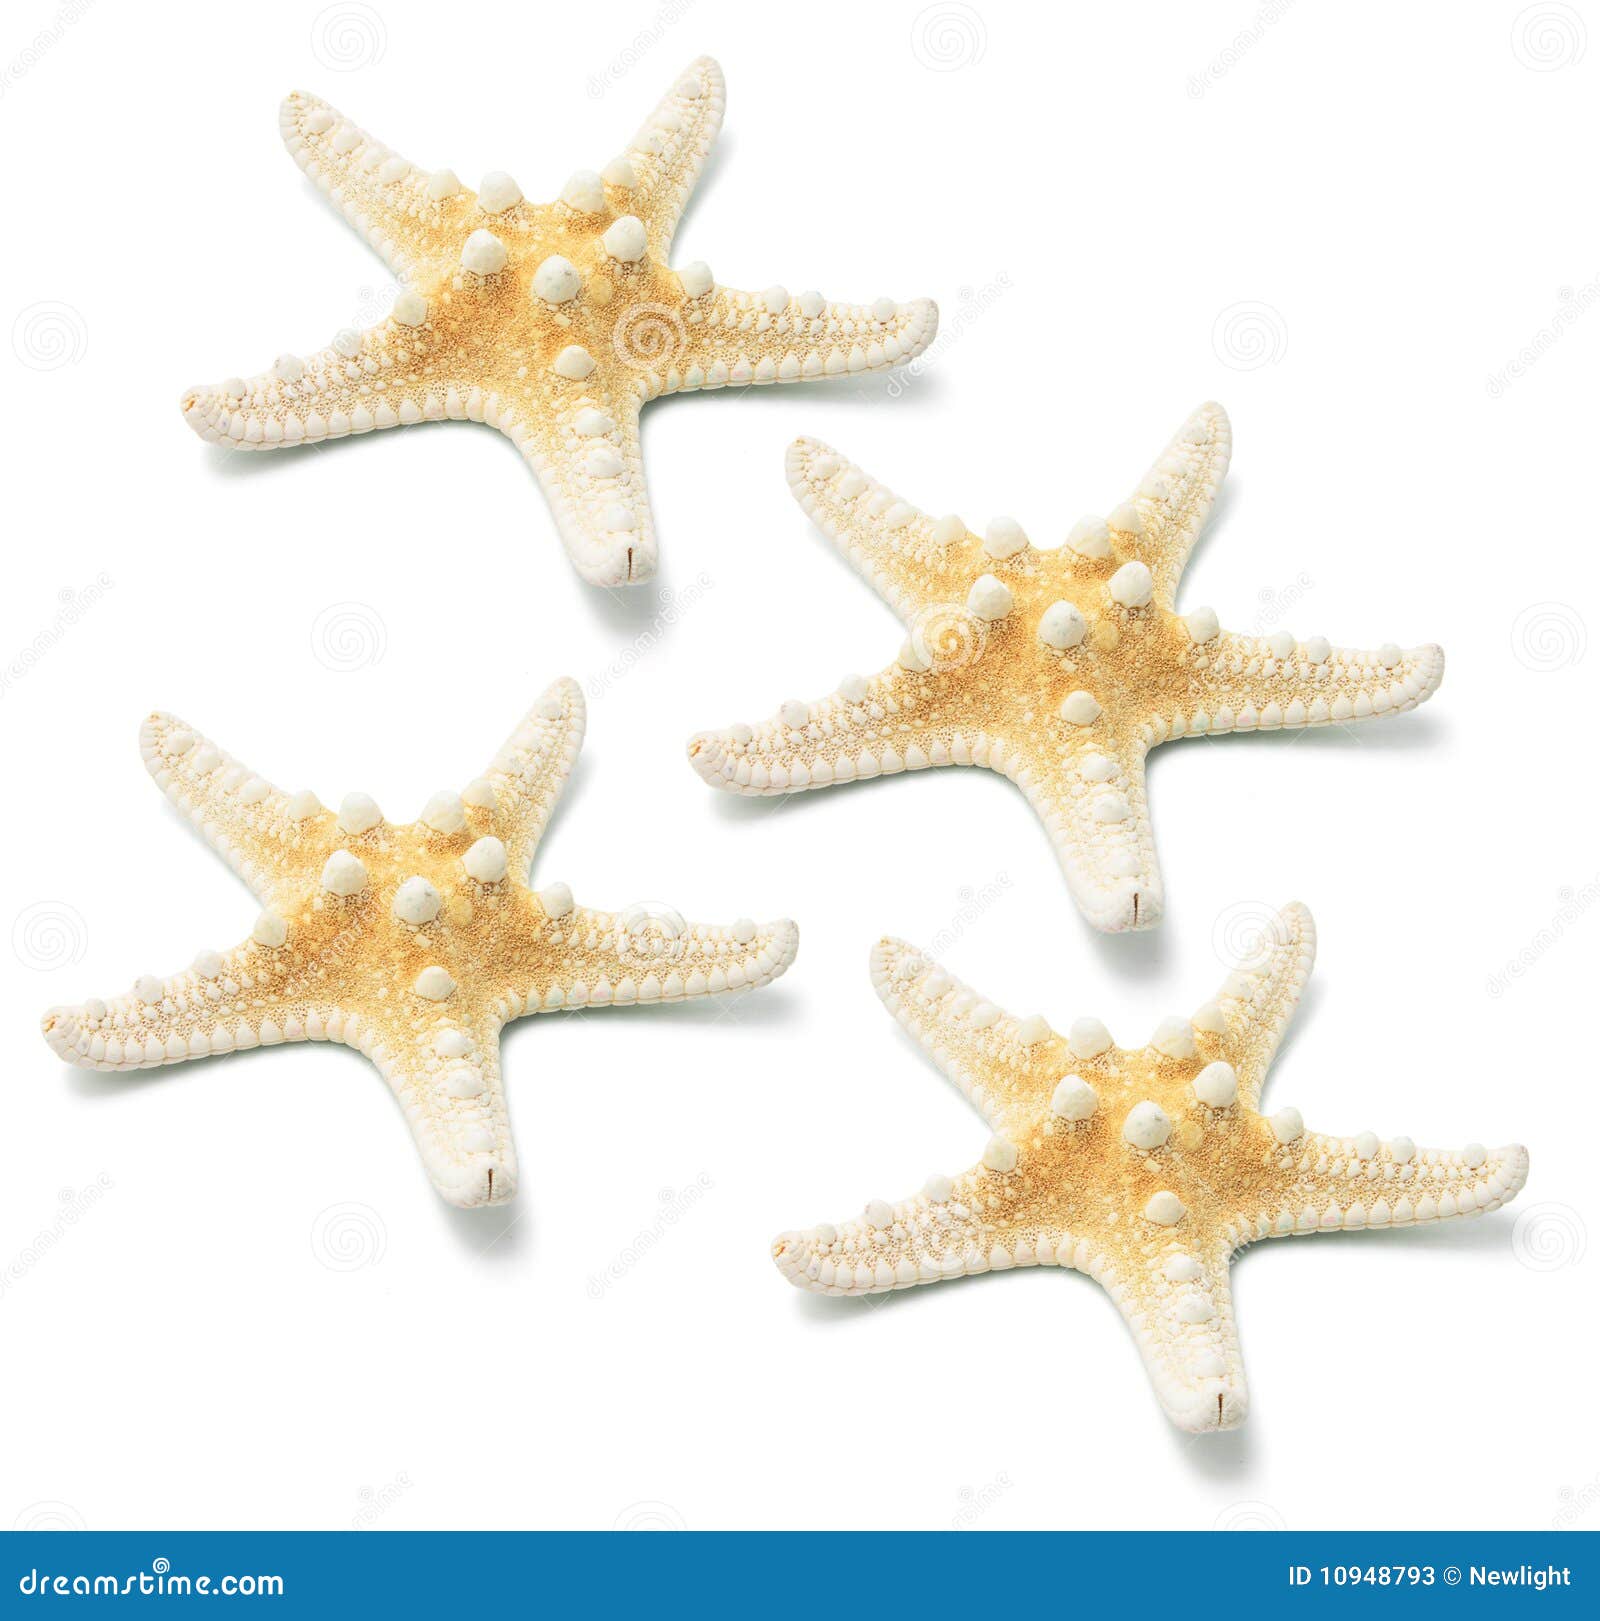 Star Fish stock image. Image of starfish, inverterate - 10948793